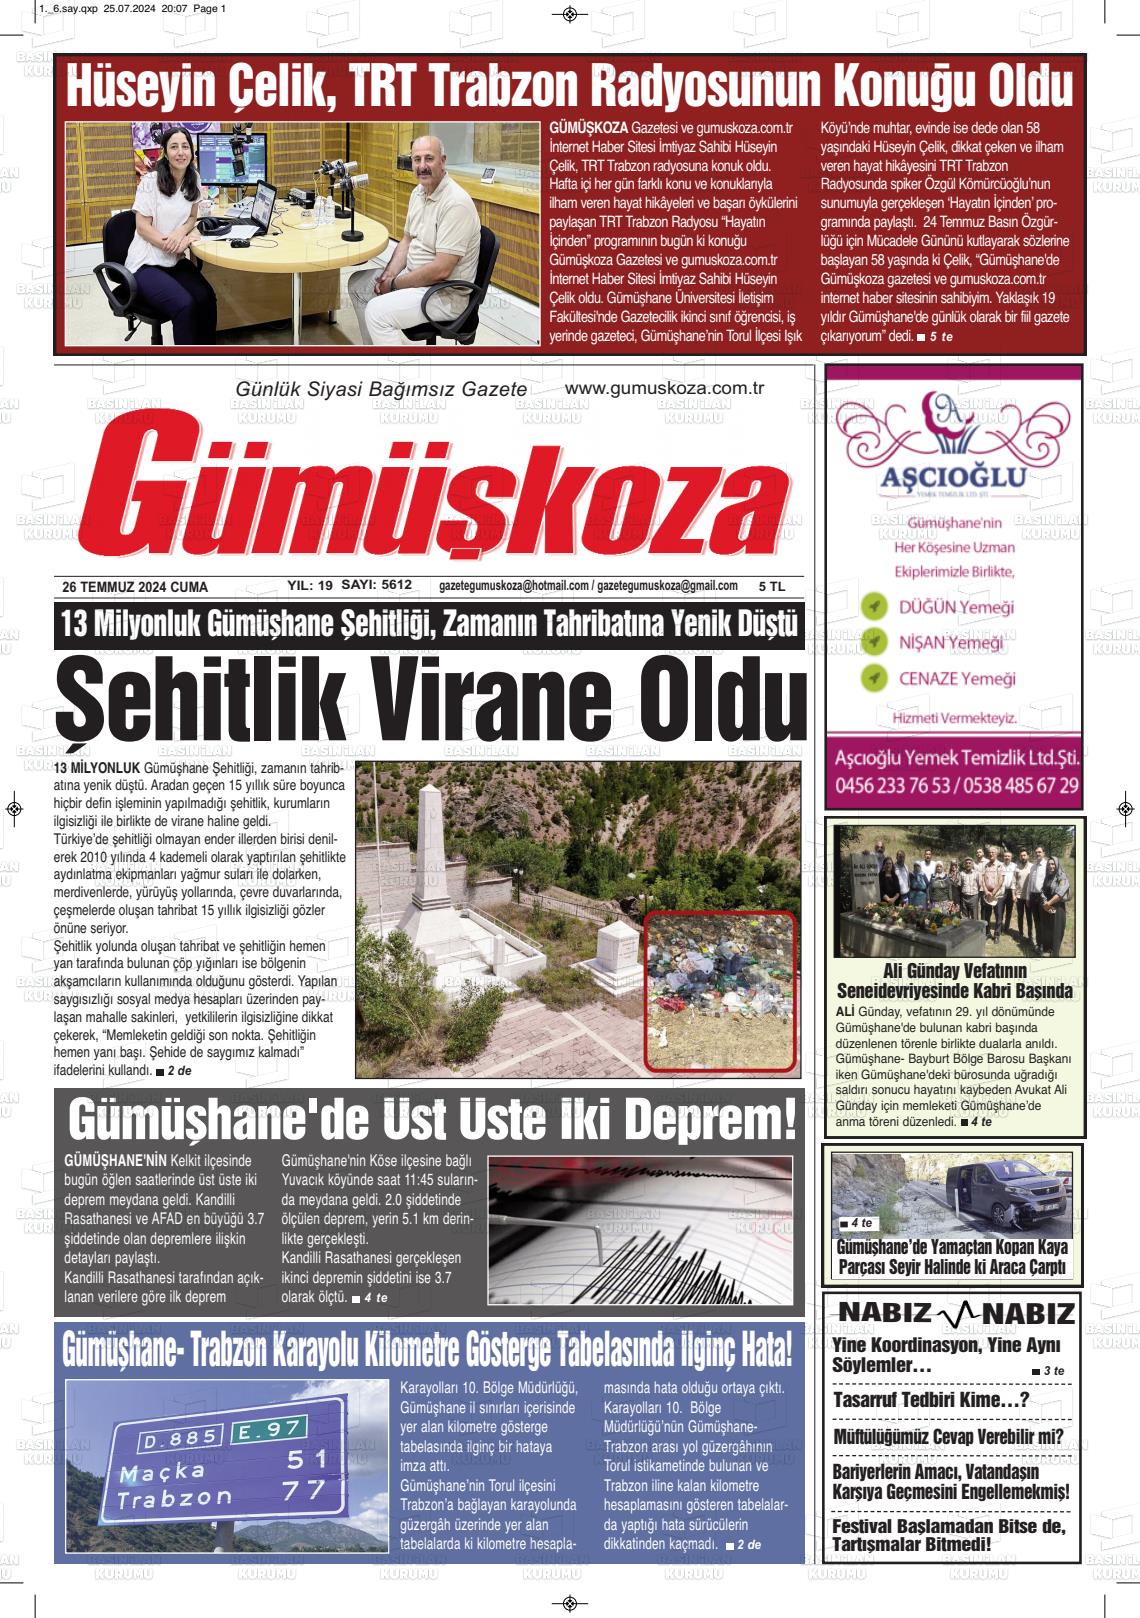 27 Temmuz 2024 Gümüşkoza Gazete Manşeti